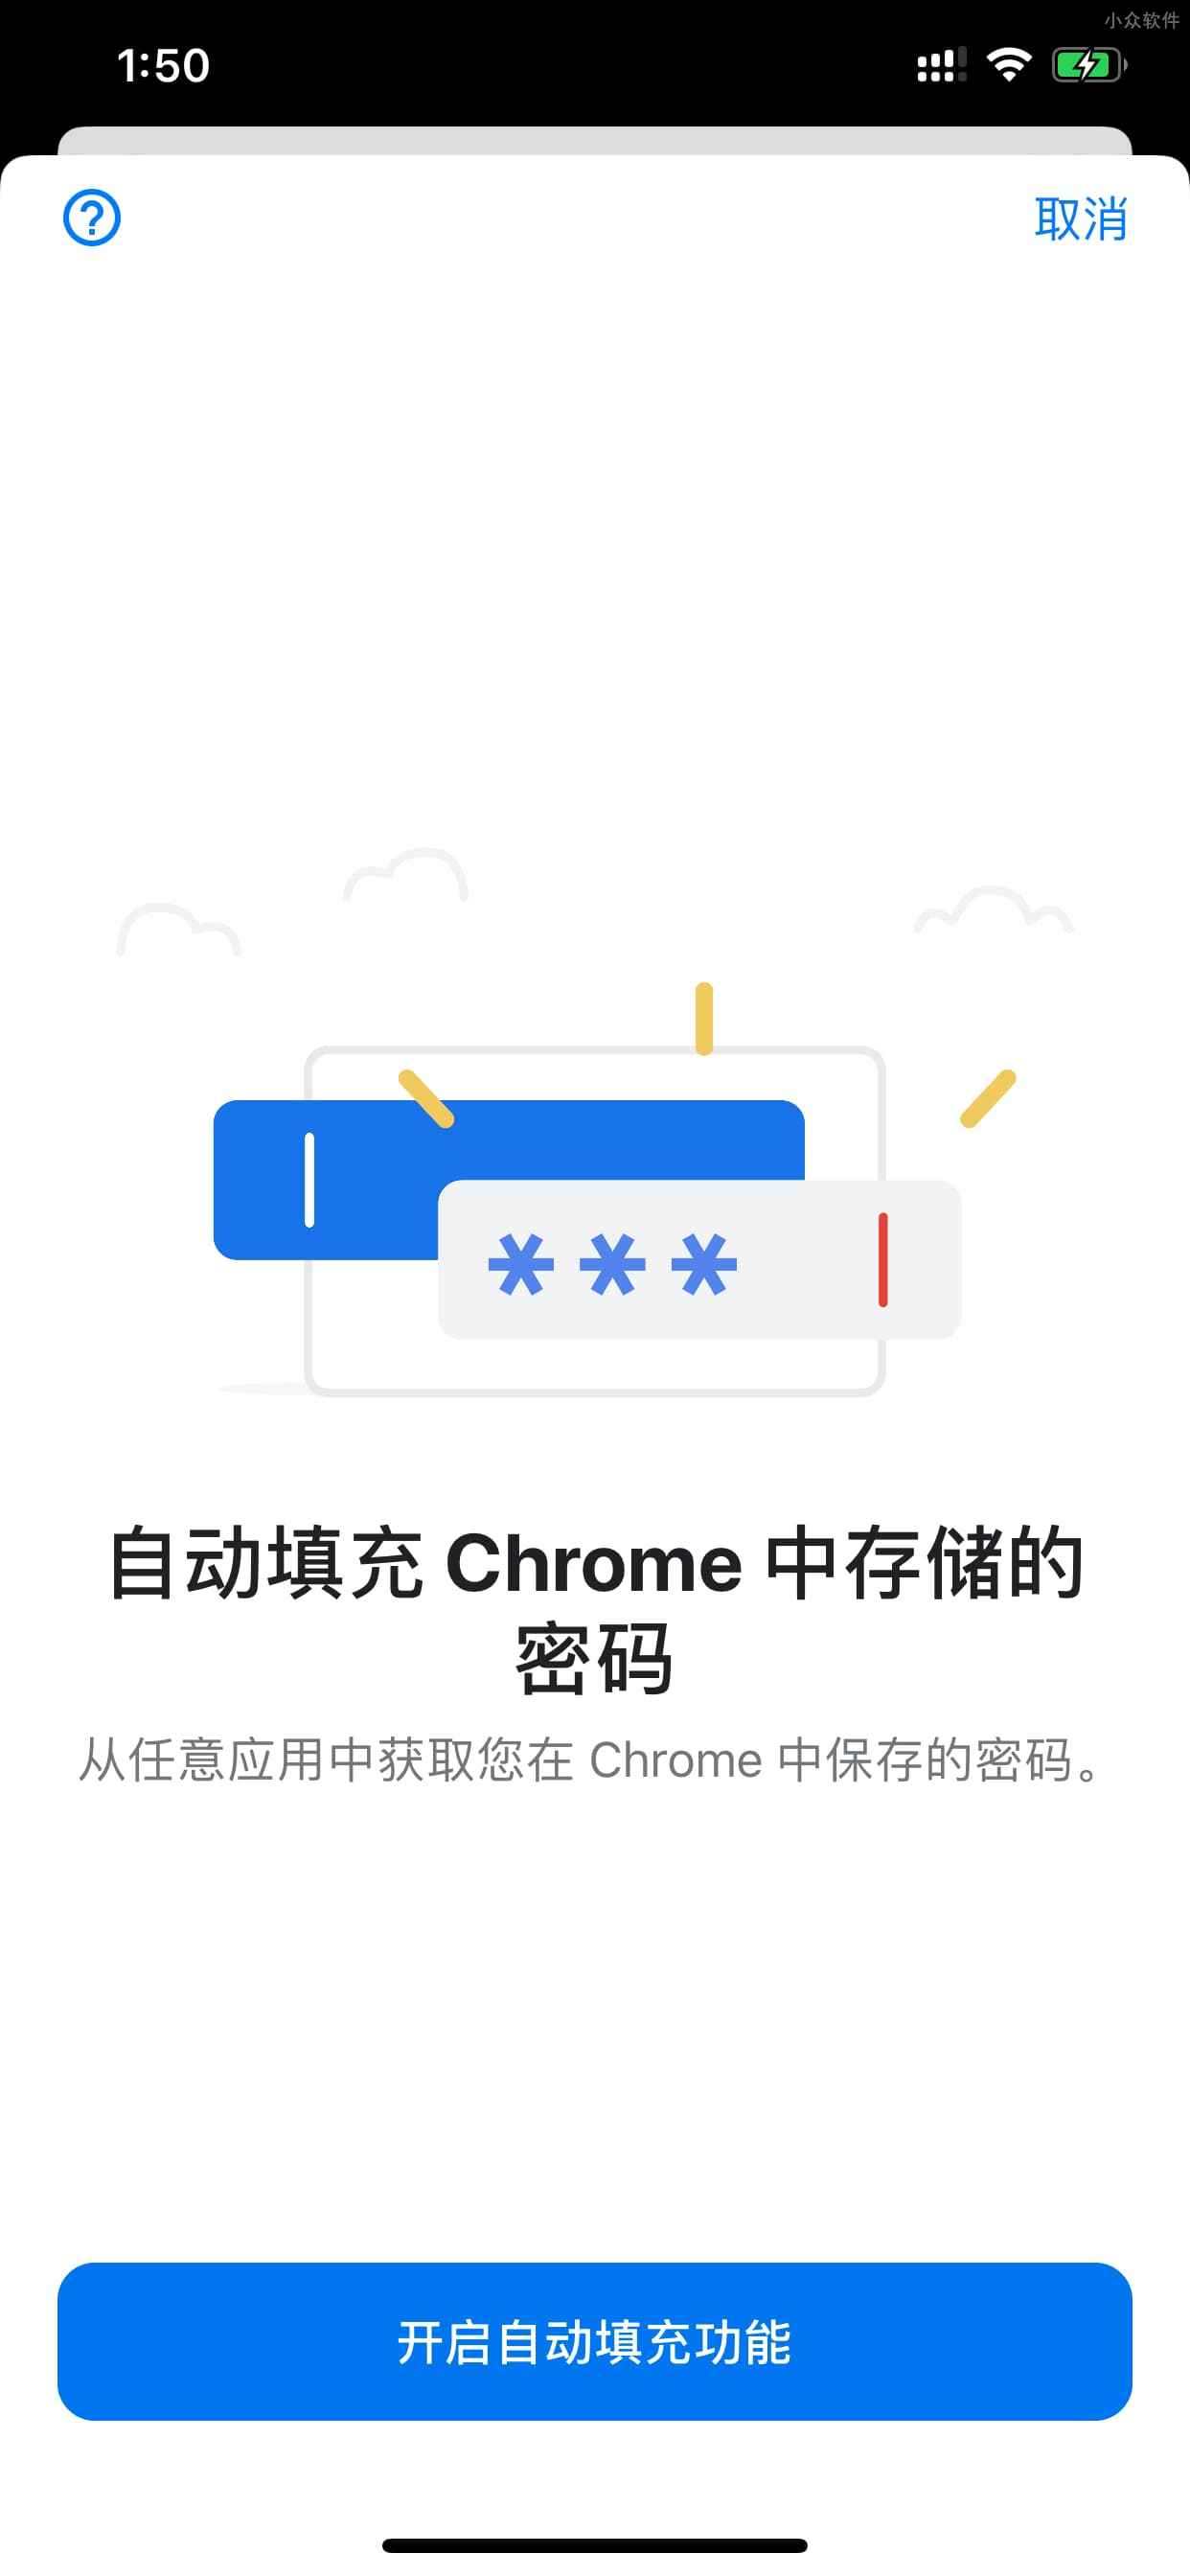 Chrome 已支持在 iOS 同步密码，并在浏览器及第三方应用自动填充密码 3